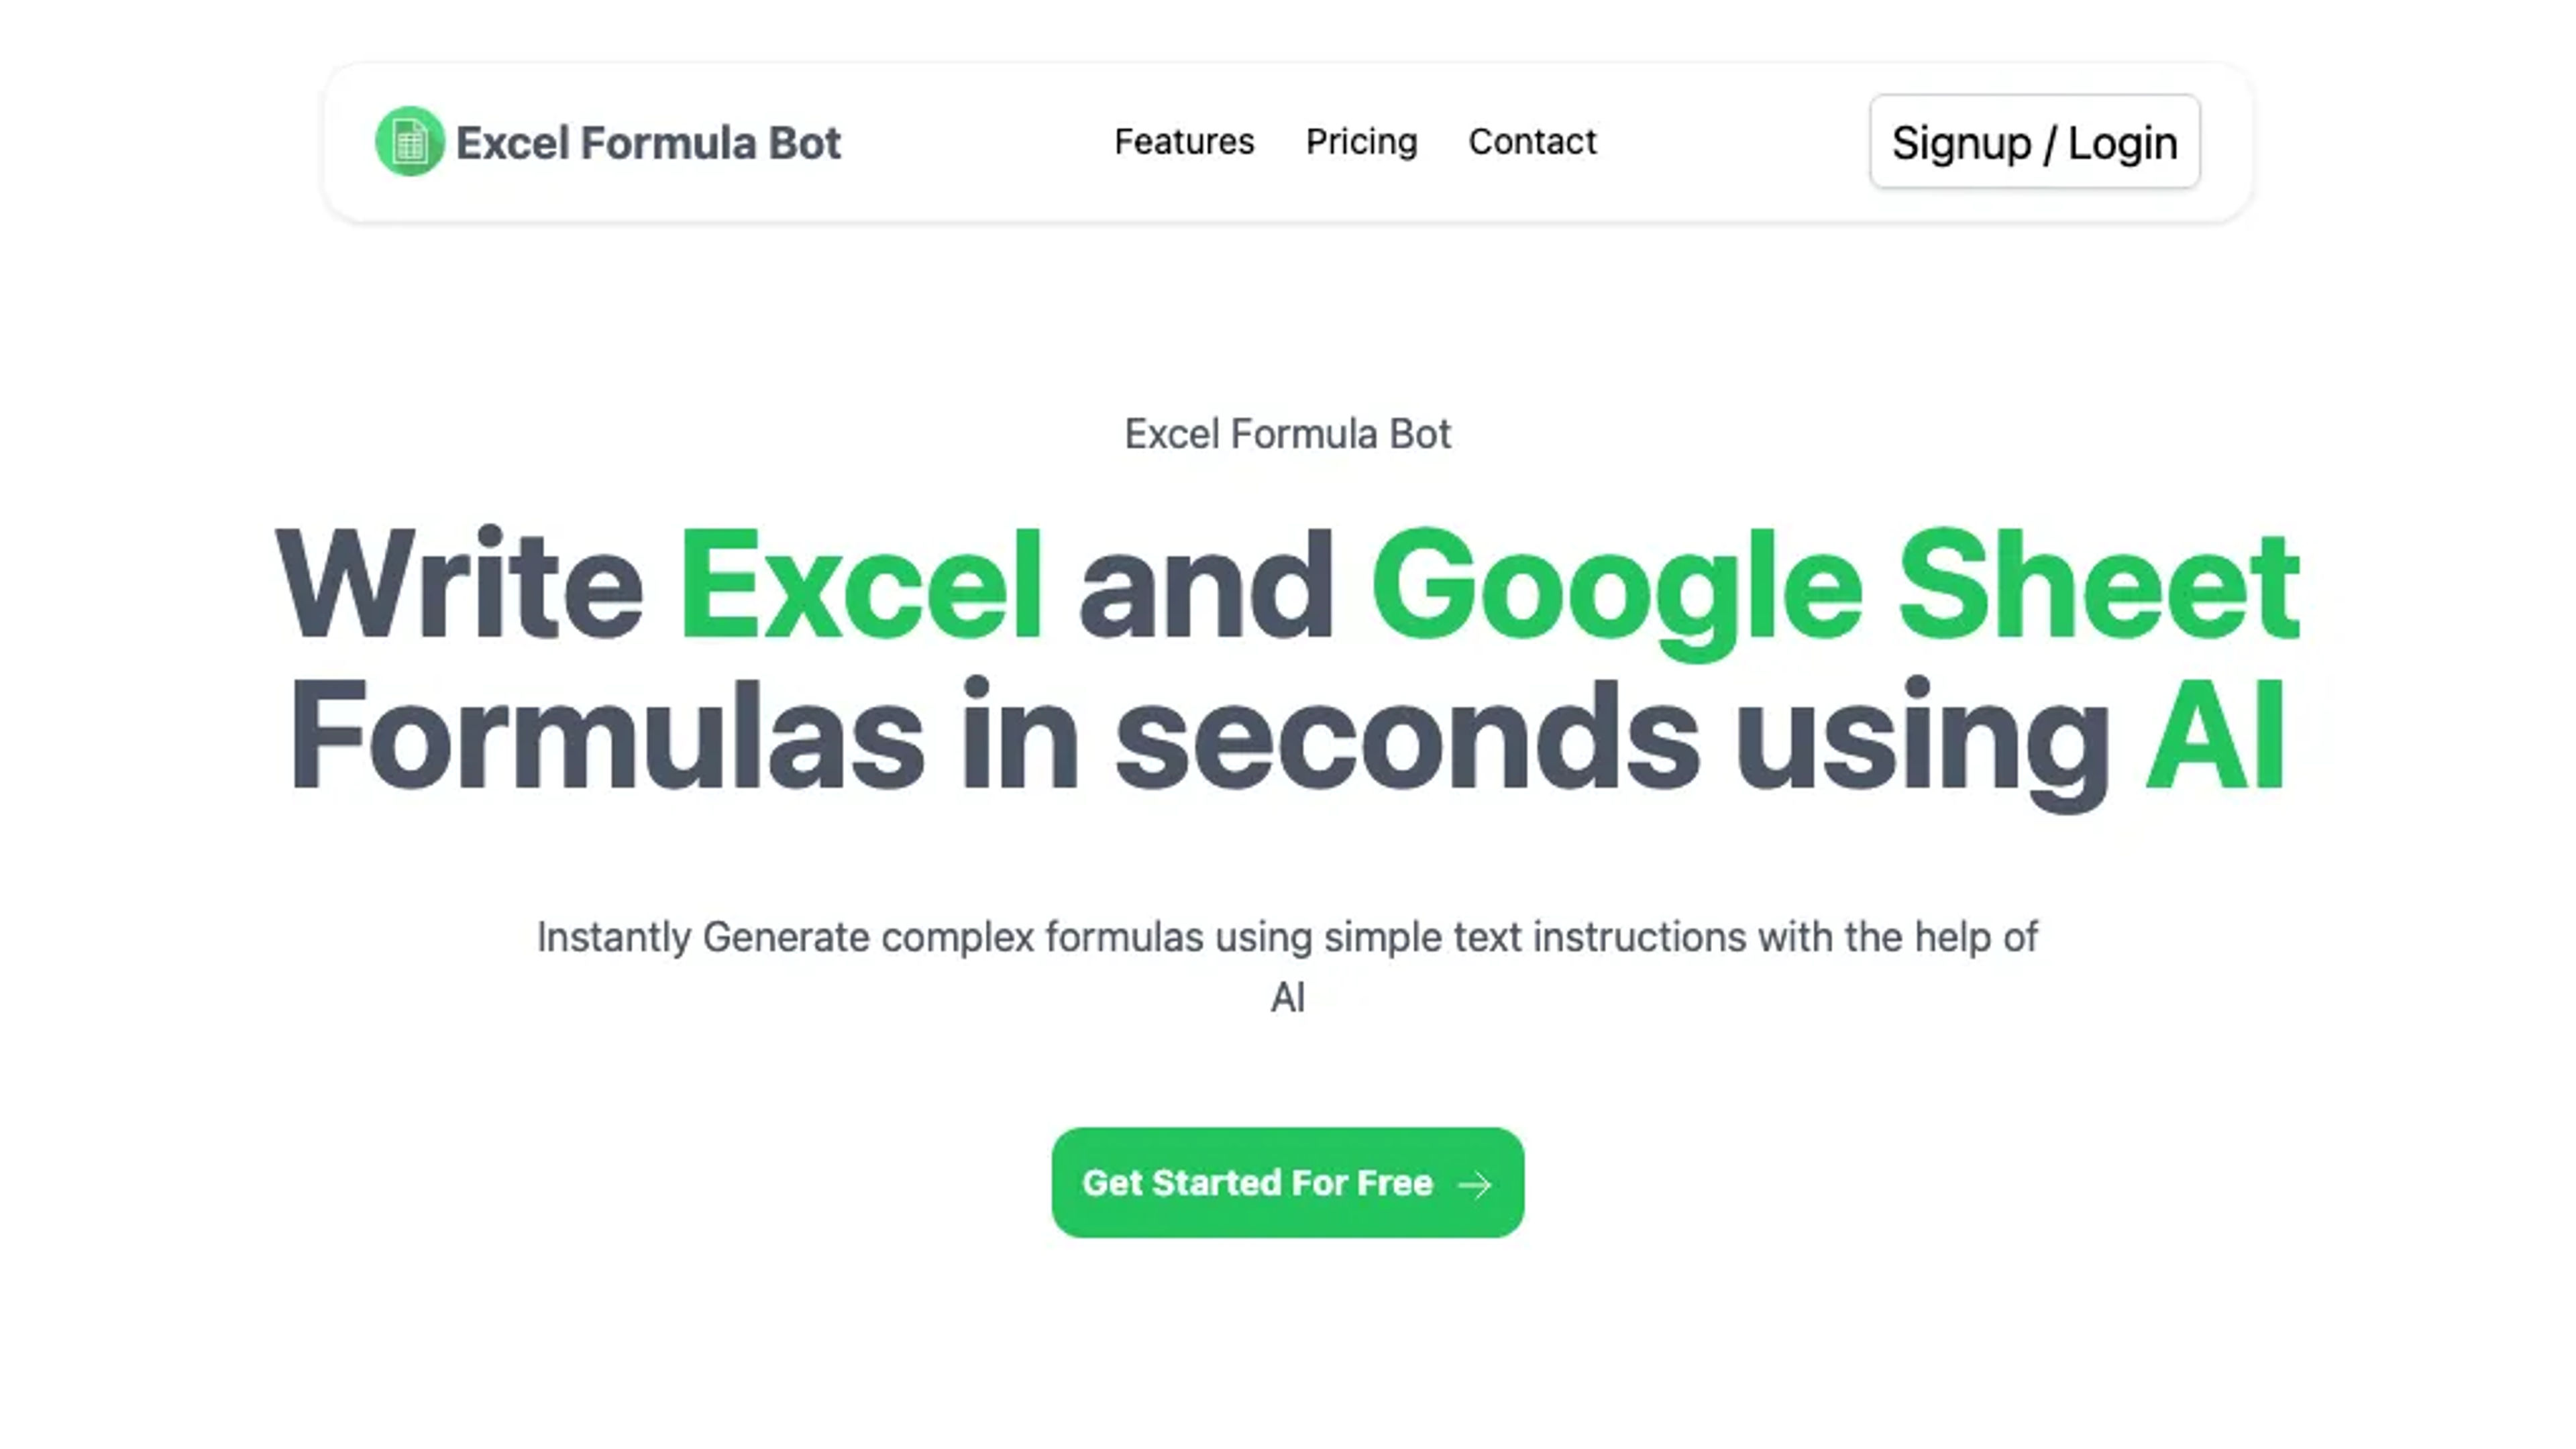 Excel Formul Bot